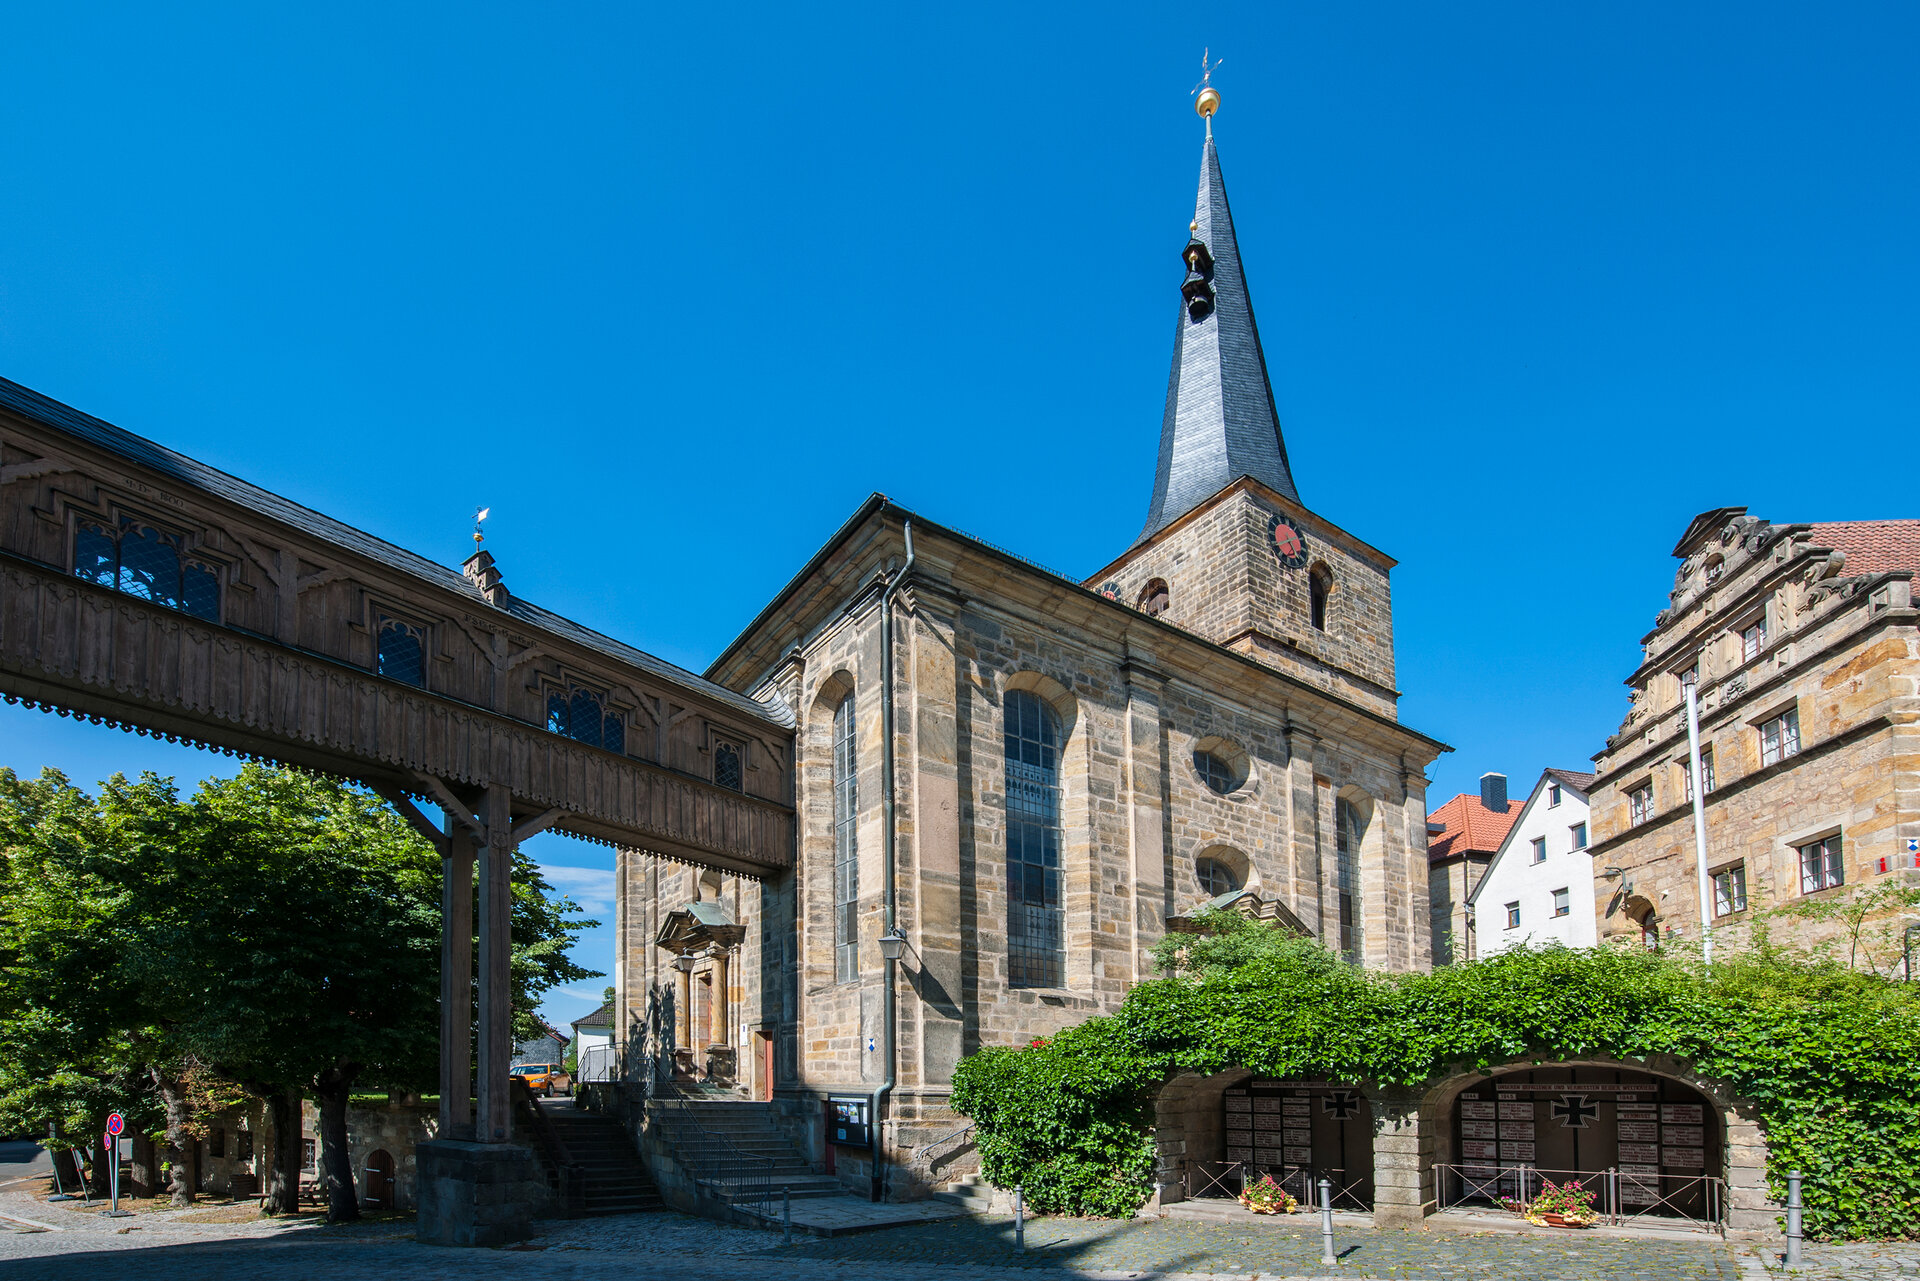 Eine Gebäudebrücke aus Holz führt von links kommend zu einer Kirche mit einem spitzen, schiefergedeckten Turm. 